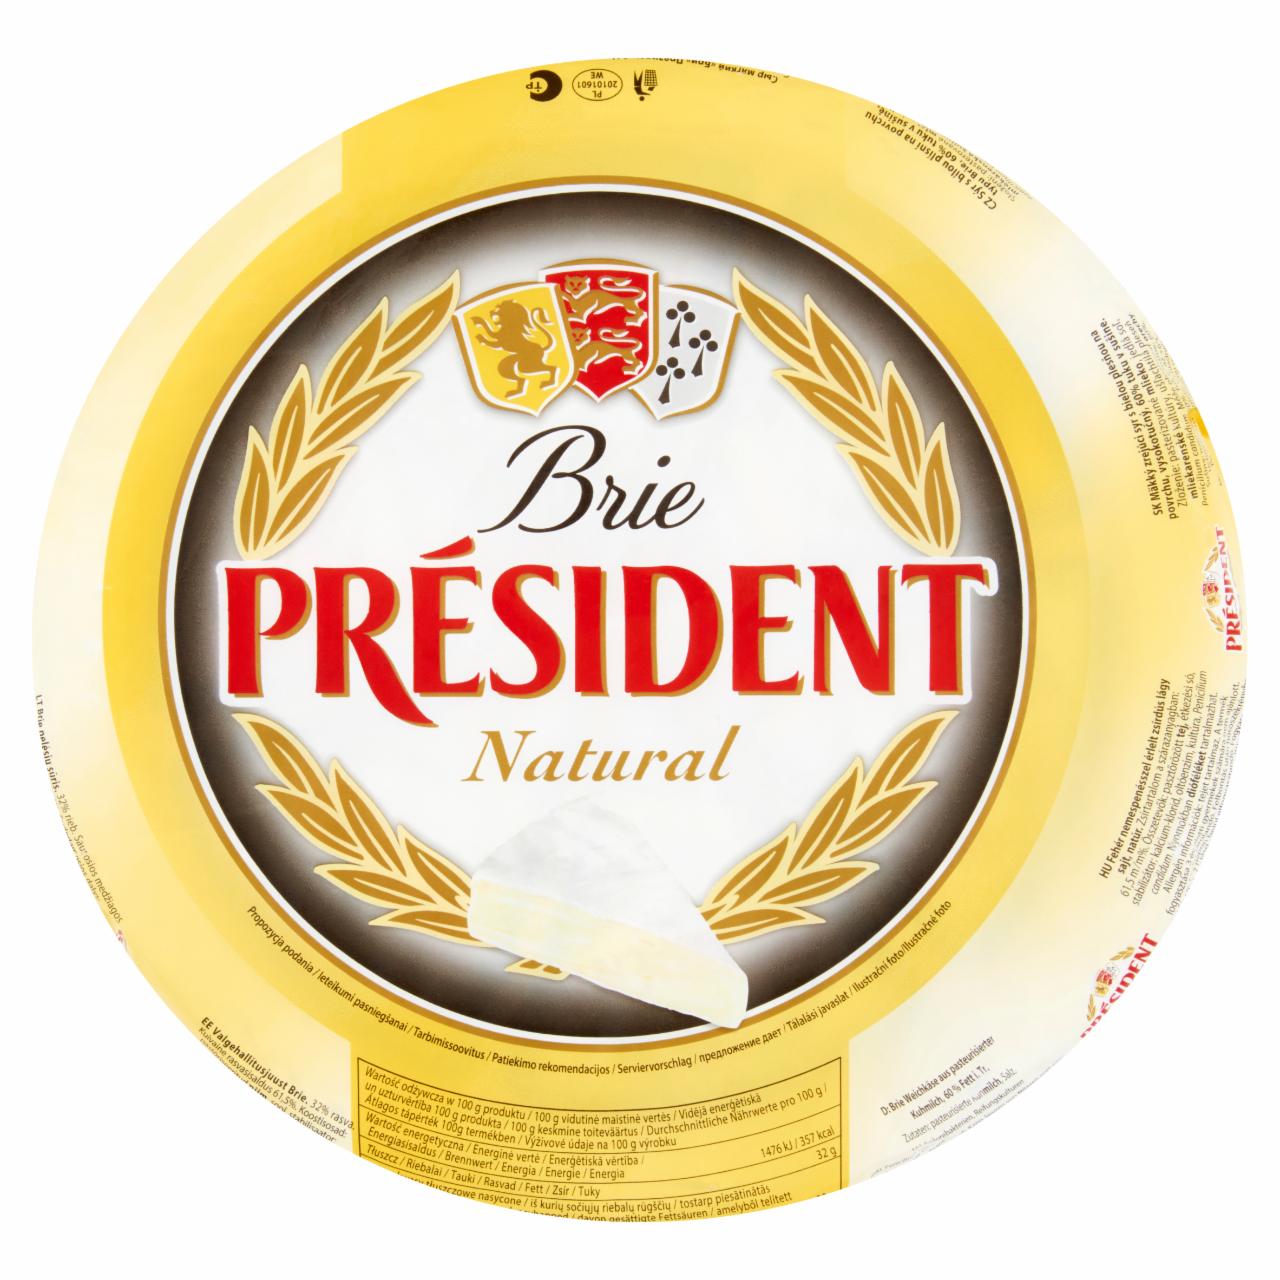 Képek - Président Brie natúr lágy sajt